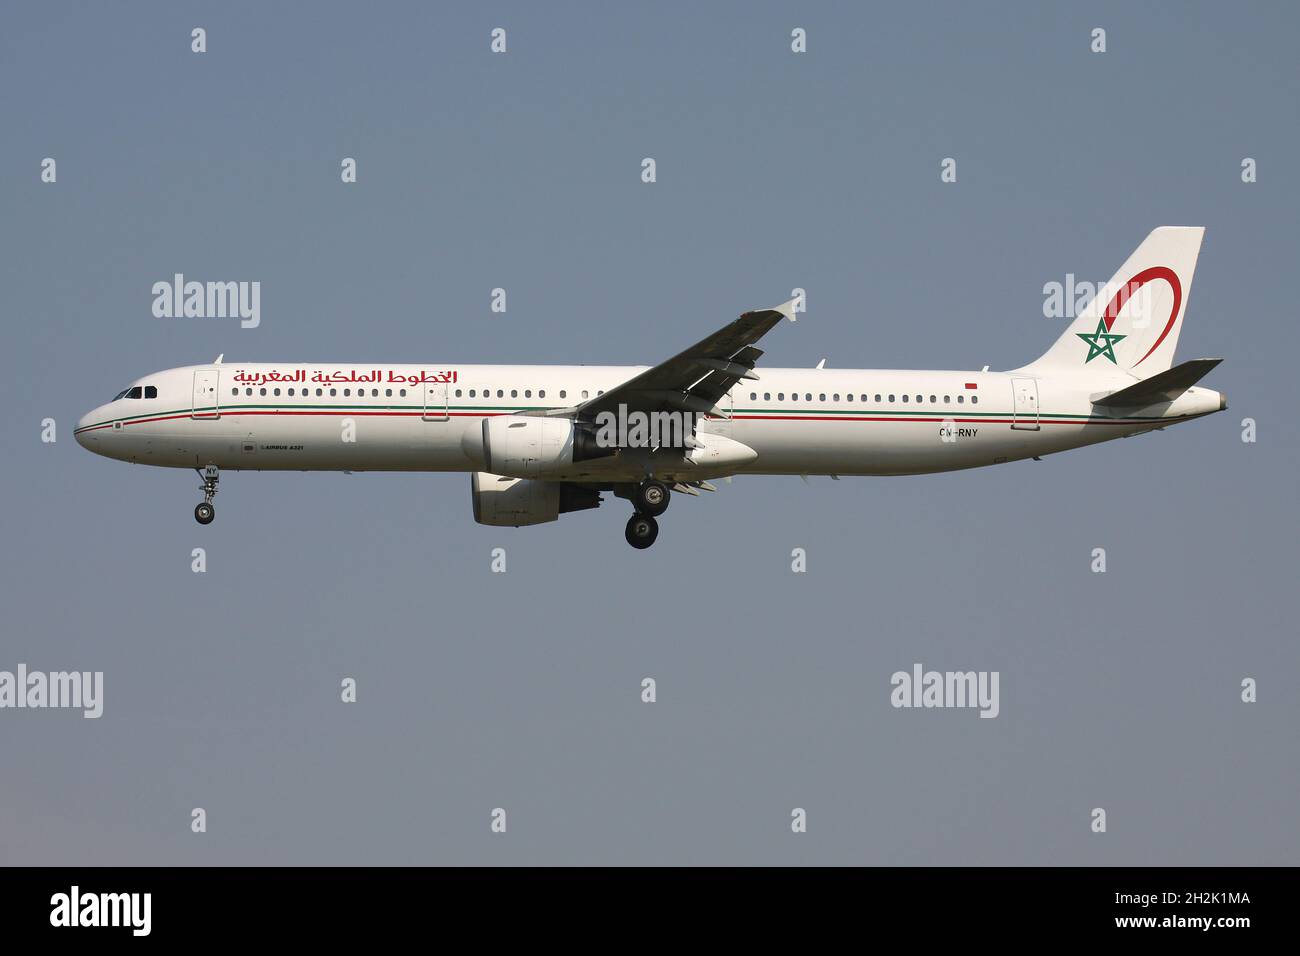 Royal Air Maroc Airbus A321-200 mit Registrierung CN-RNY im Kurzfinale für Start- und Landebahn 01 des Brüsseler Flughafens. Stockfoto